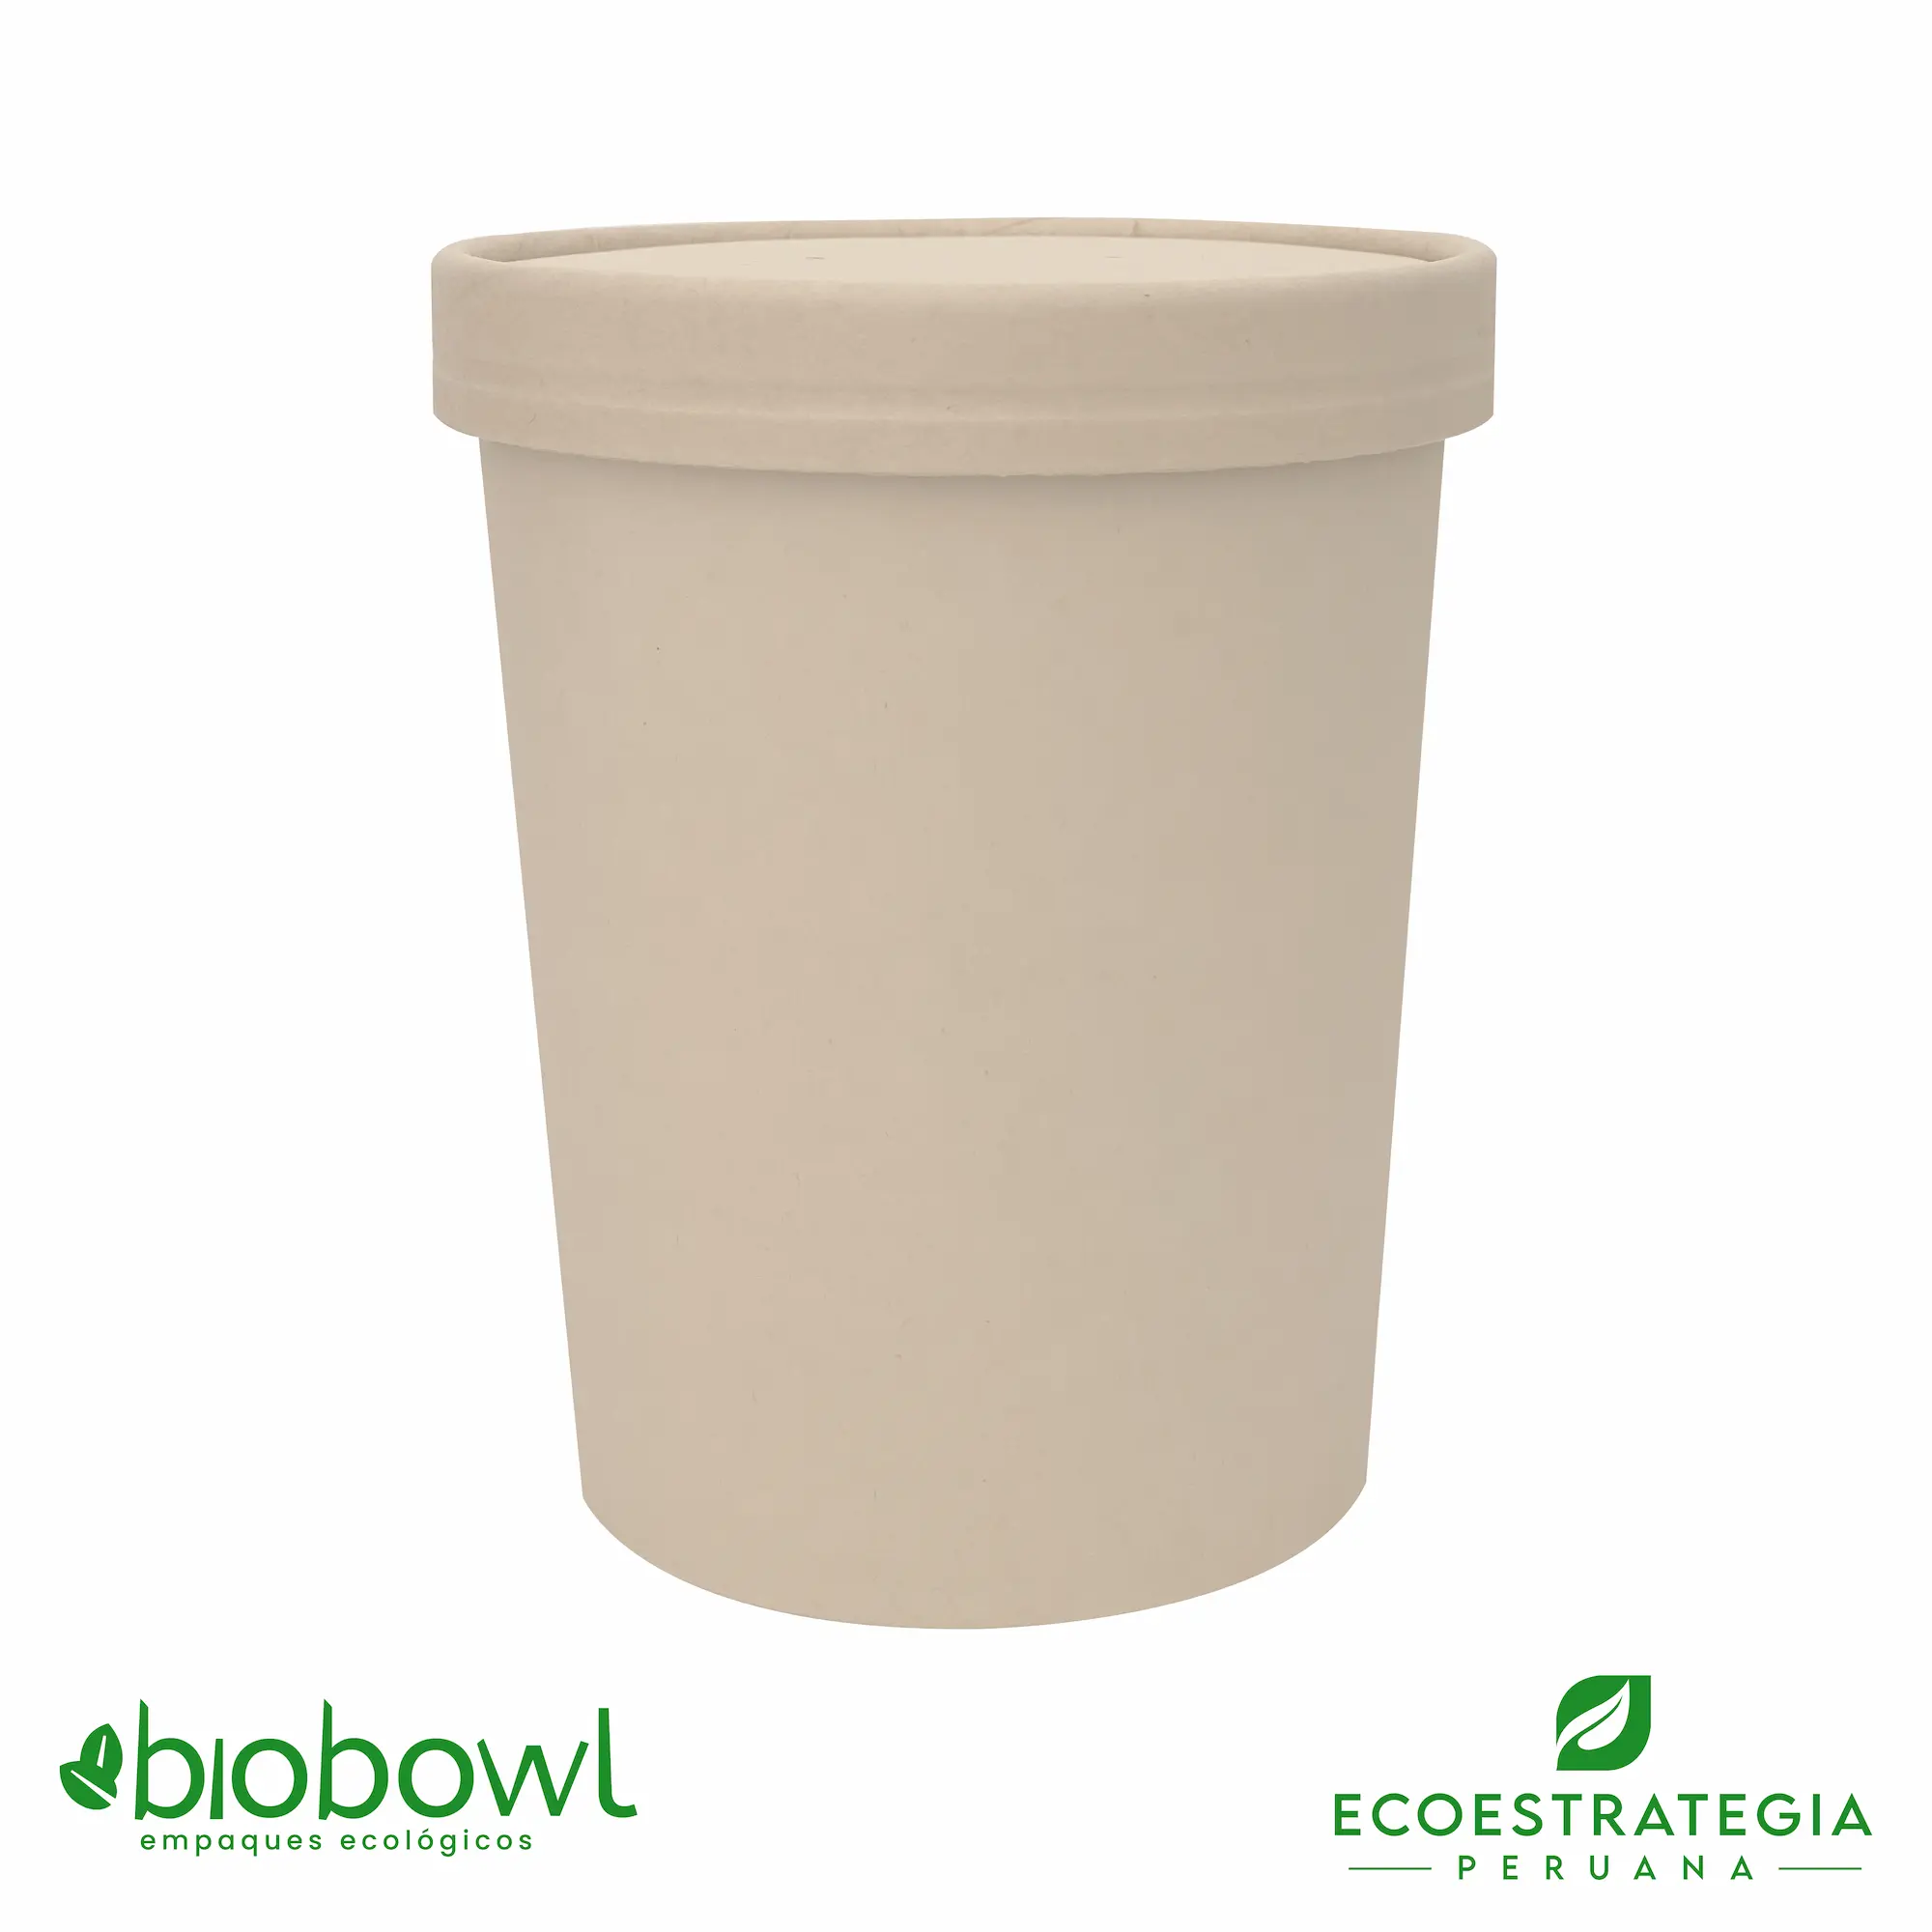 EL bowl de bambú sopero biodegradable de 32oz EP-S32 es tambien conocido como Sopero bambú 32 oz, sopero biodegradable 32 oz, sopero kraft 32oz, sopero pamolsa 32 oz, sopero biodegradable, soperos kraft con tapa, bowl kraft 32 oz con tapa, soup cup 32 oz + tapa bambú, bowl bambú 32 oz, bowl helado 32 oz, bowl de 32 onzas de kraft, bowl de 32 oz de bambú, envase biodegradable de 32 oz, envase 32 oz con tapa, contenedores bambú 32 oz, contenedores kraft 32 oz, envase circular 32 oz, bowl celulosa de bambú 32 oz, bowl hondo biodegradable 32 oz, envases soperos con tapa 32 oz, envase circular 32 oz bioform kraft, sopero fibra de bambú 32 oz, envase para sopa 32 oz, envase para helado 32 oz, envase barril 32 oz biodegradable, envase bambú 32 oz, importadores de sopero 32 oz bambú, distribuidores de sopero 32 oz bambú, mayorista de sopero 32 oz bambú.